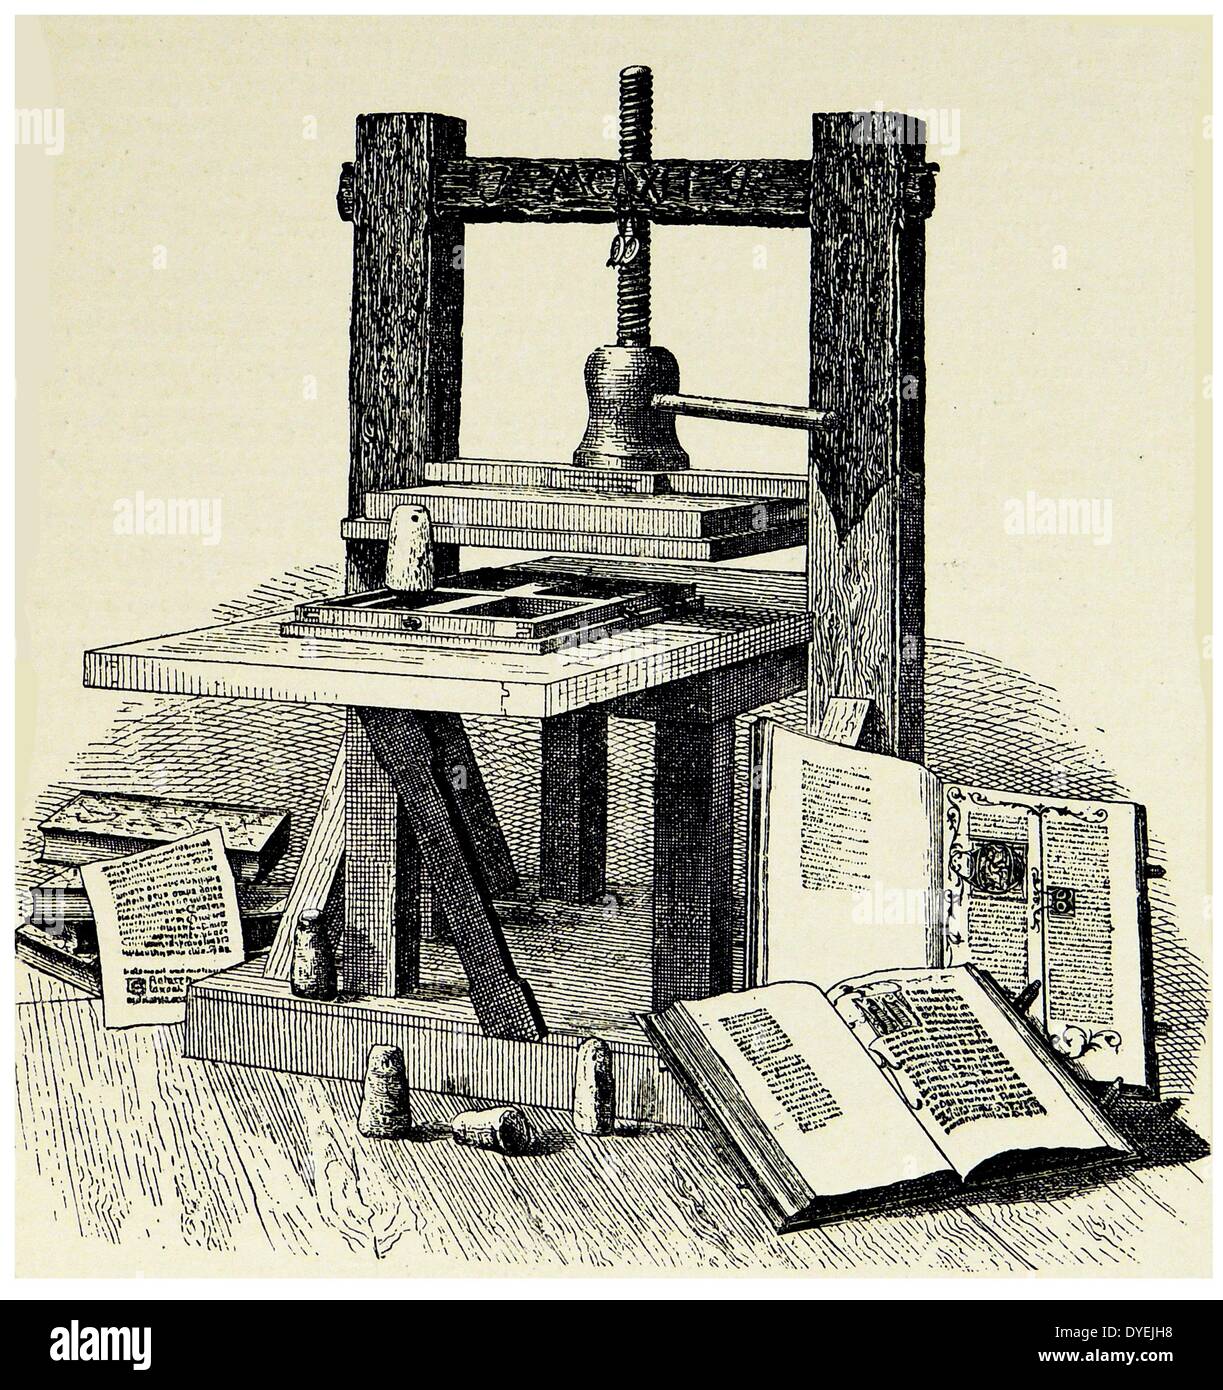 Gutenbergs (1400-1468) die erste Druckmaschine. Gravur veröffentlicht Mainz 1856. Stockfoto